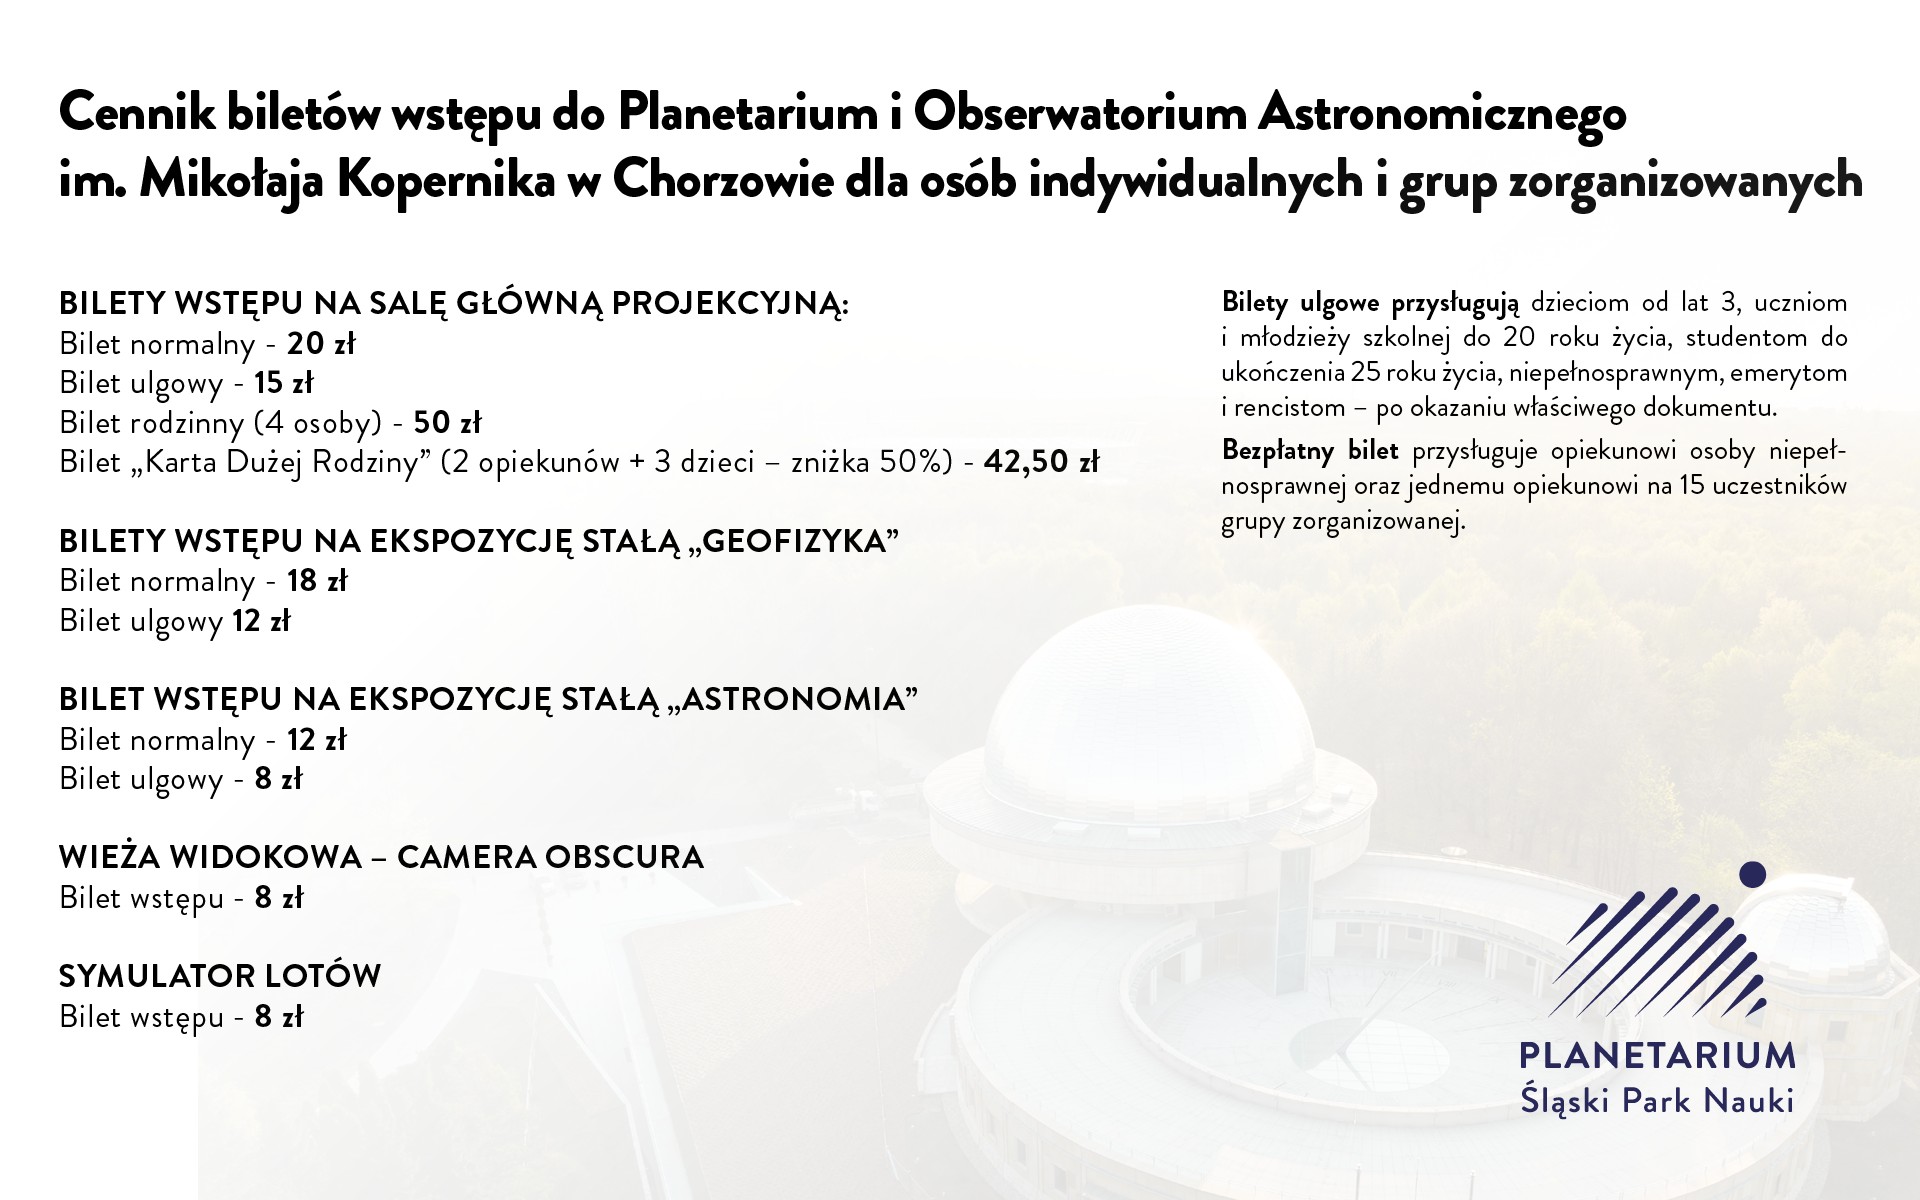 Cennik Planetarium - Śląskiego Parku Nauki